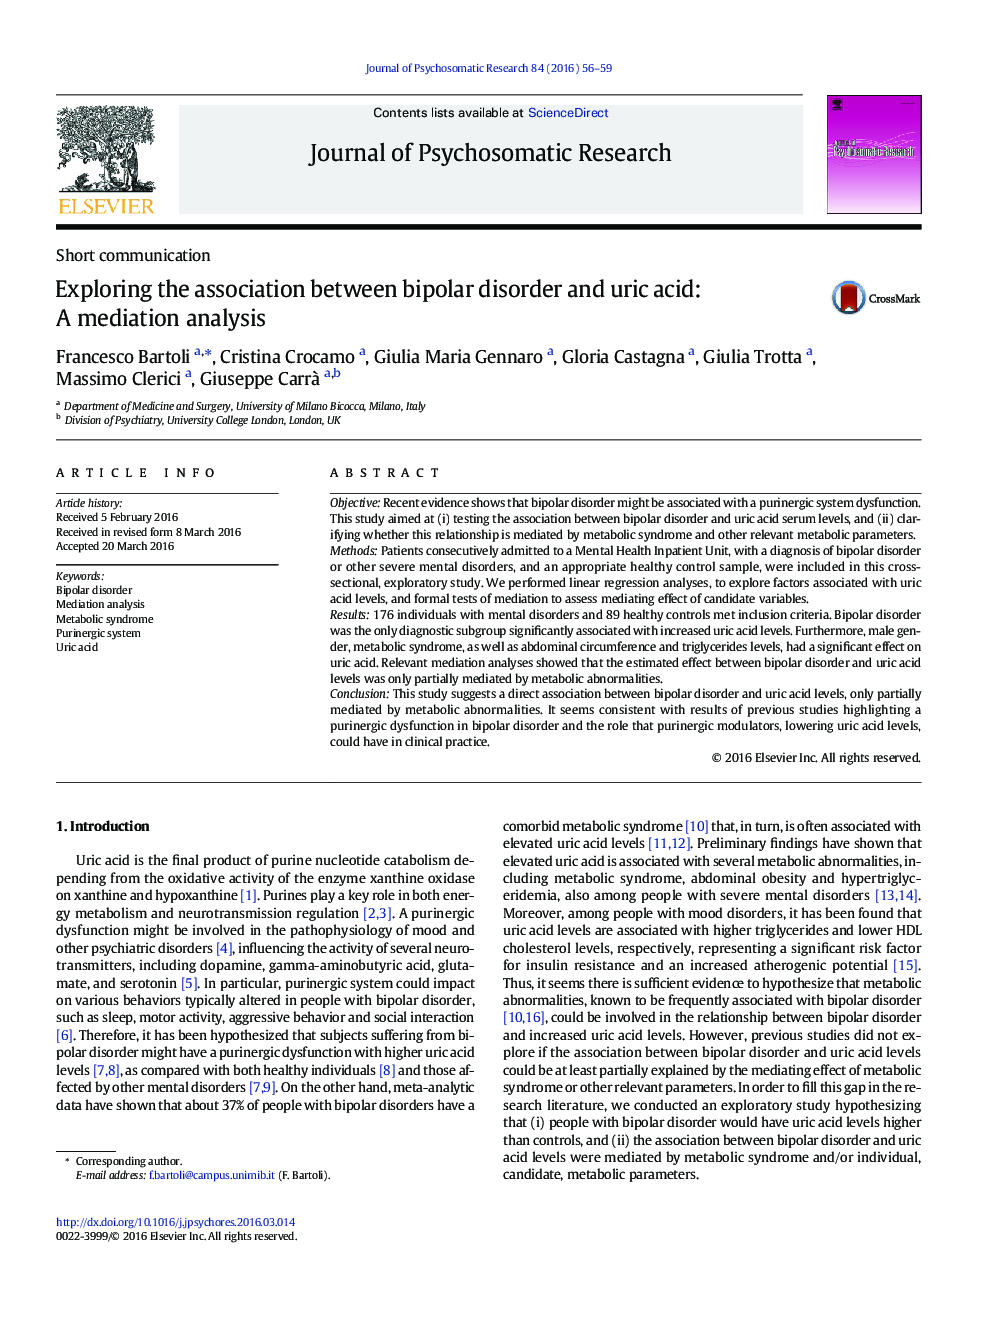 بررسی ارتباط بین اختلال دوقطبی و اسید اوریک: تجزیه و تحلیل میان جیگری